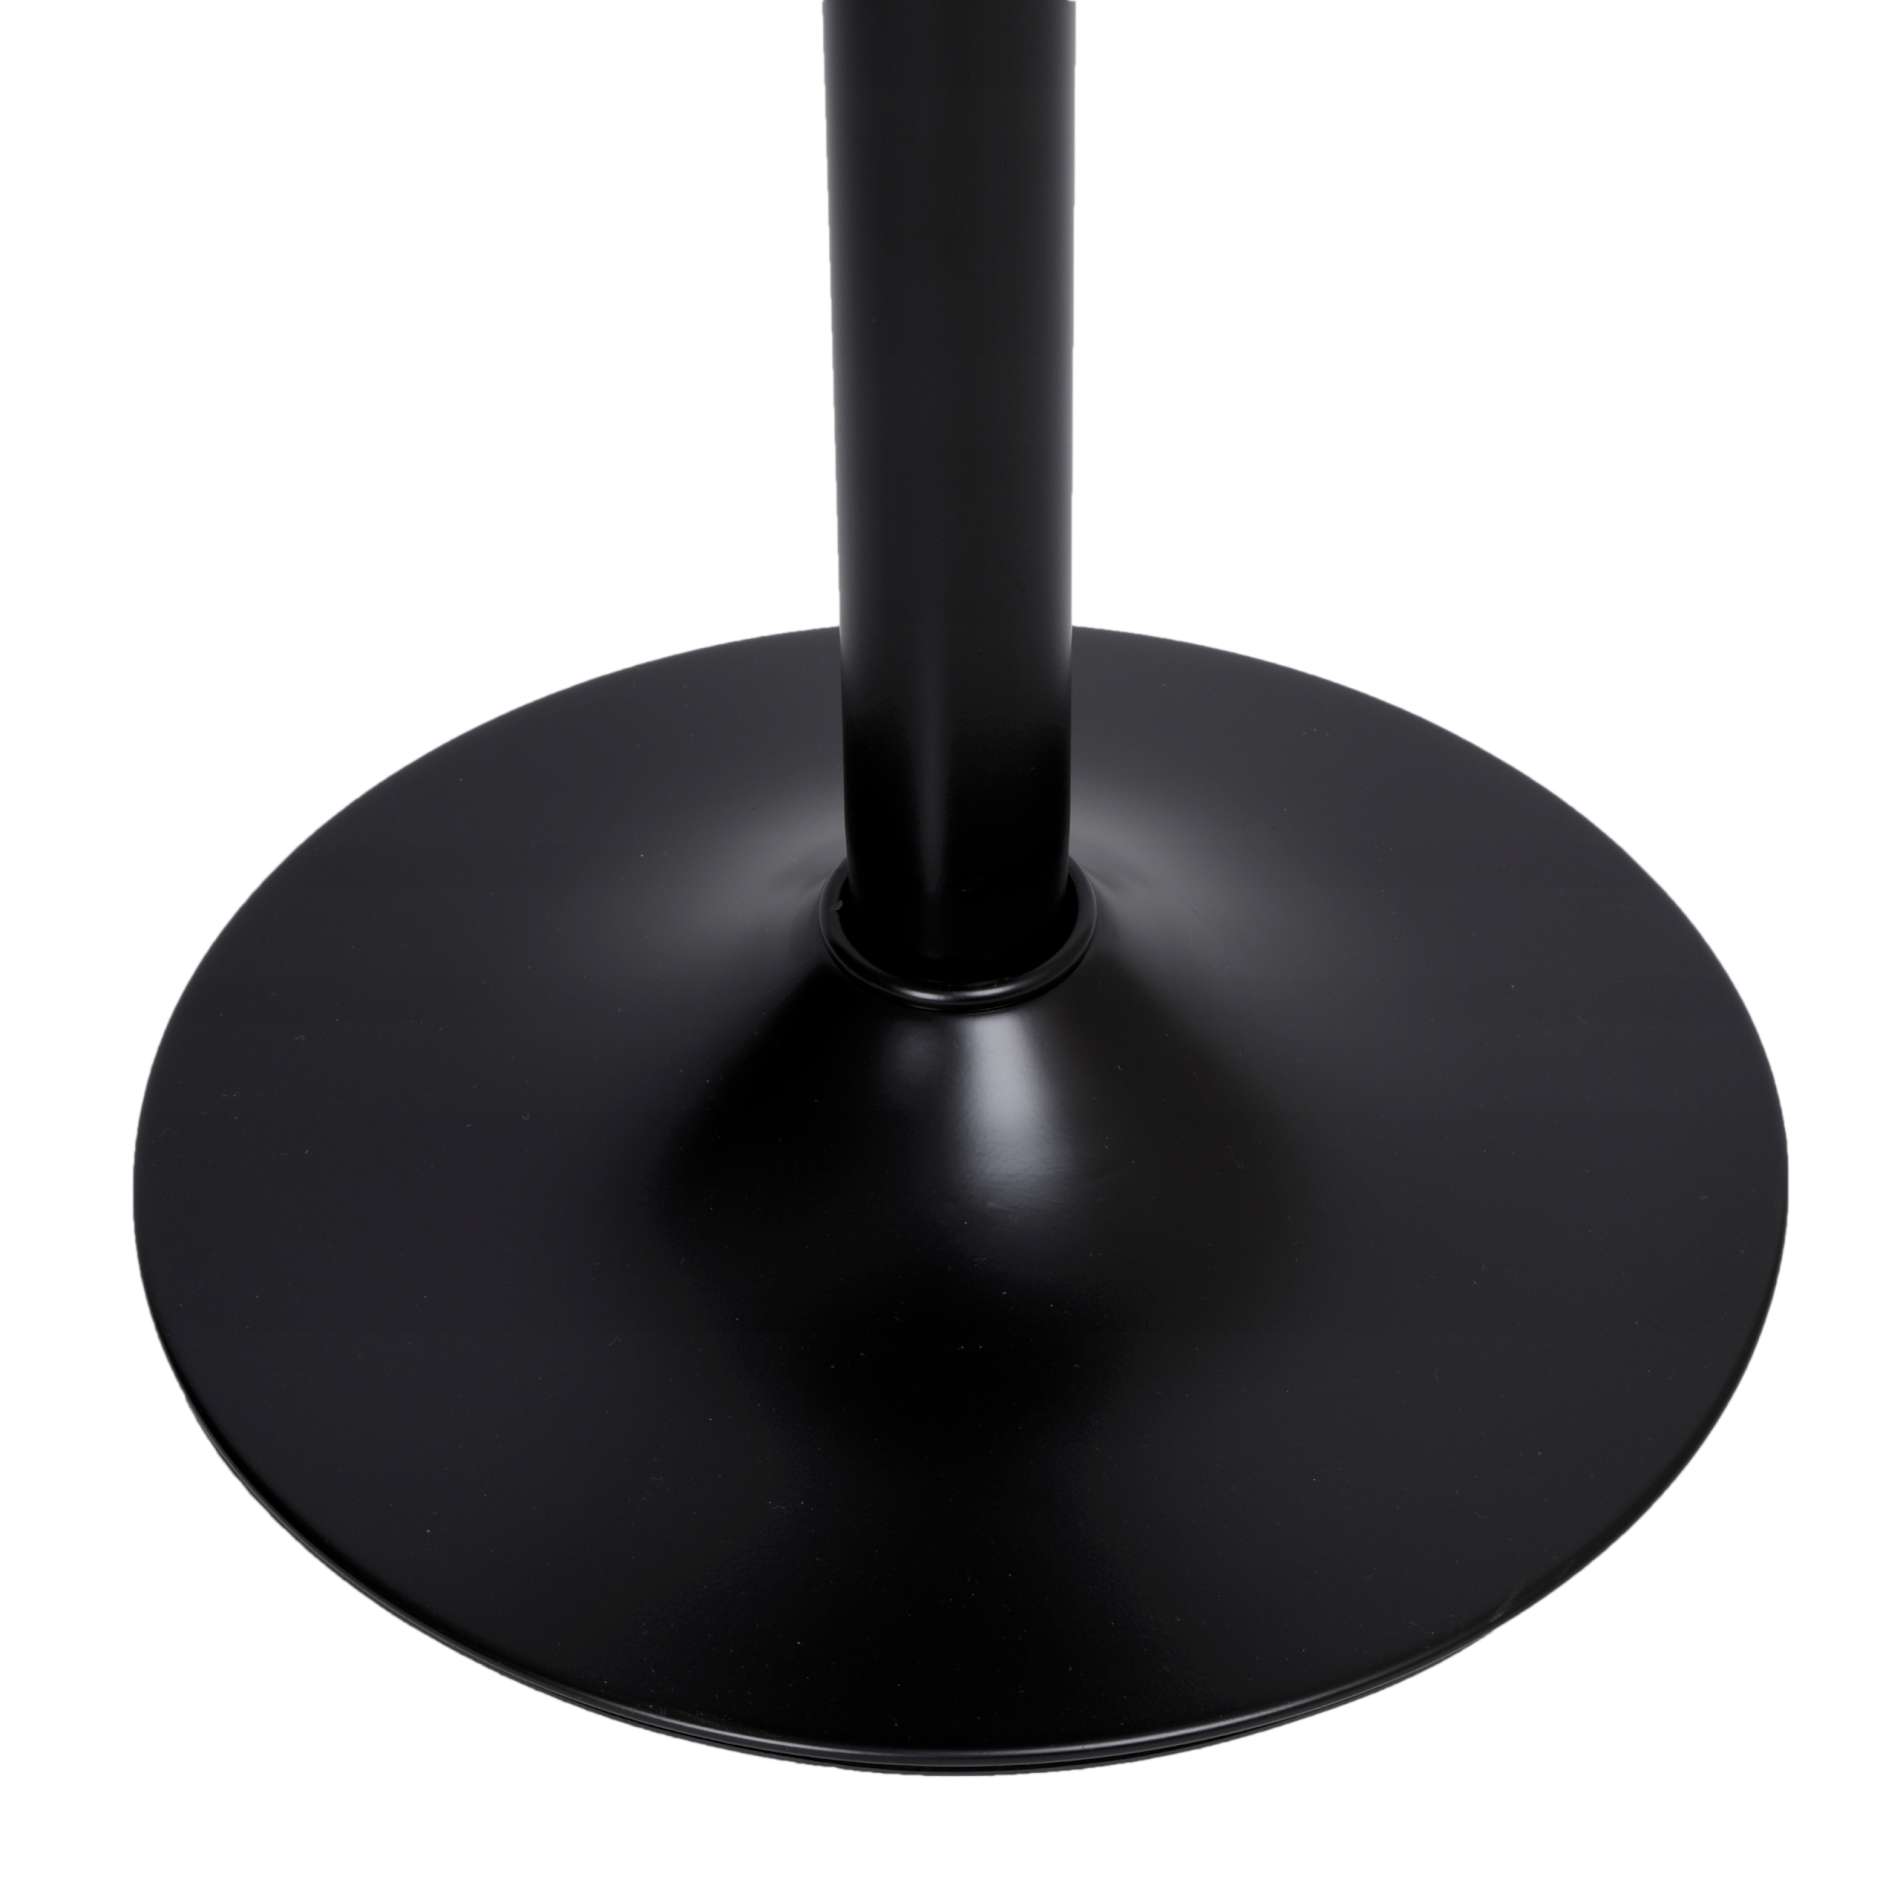 Krzesło barowe CYDRO BLACK welurowe ciemnozielone VELVET